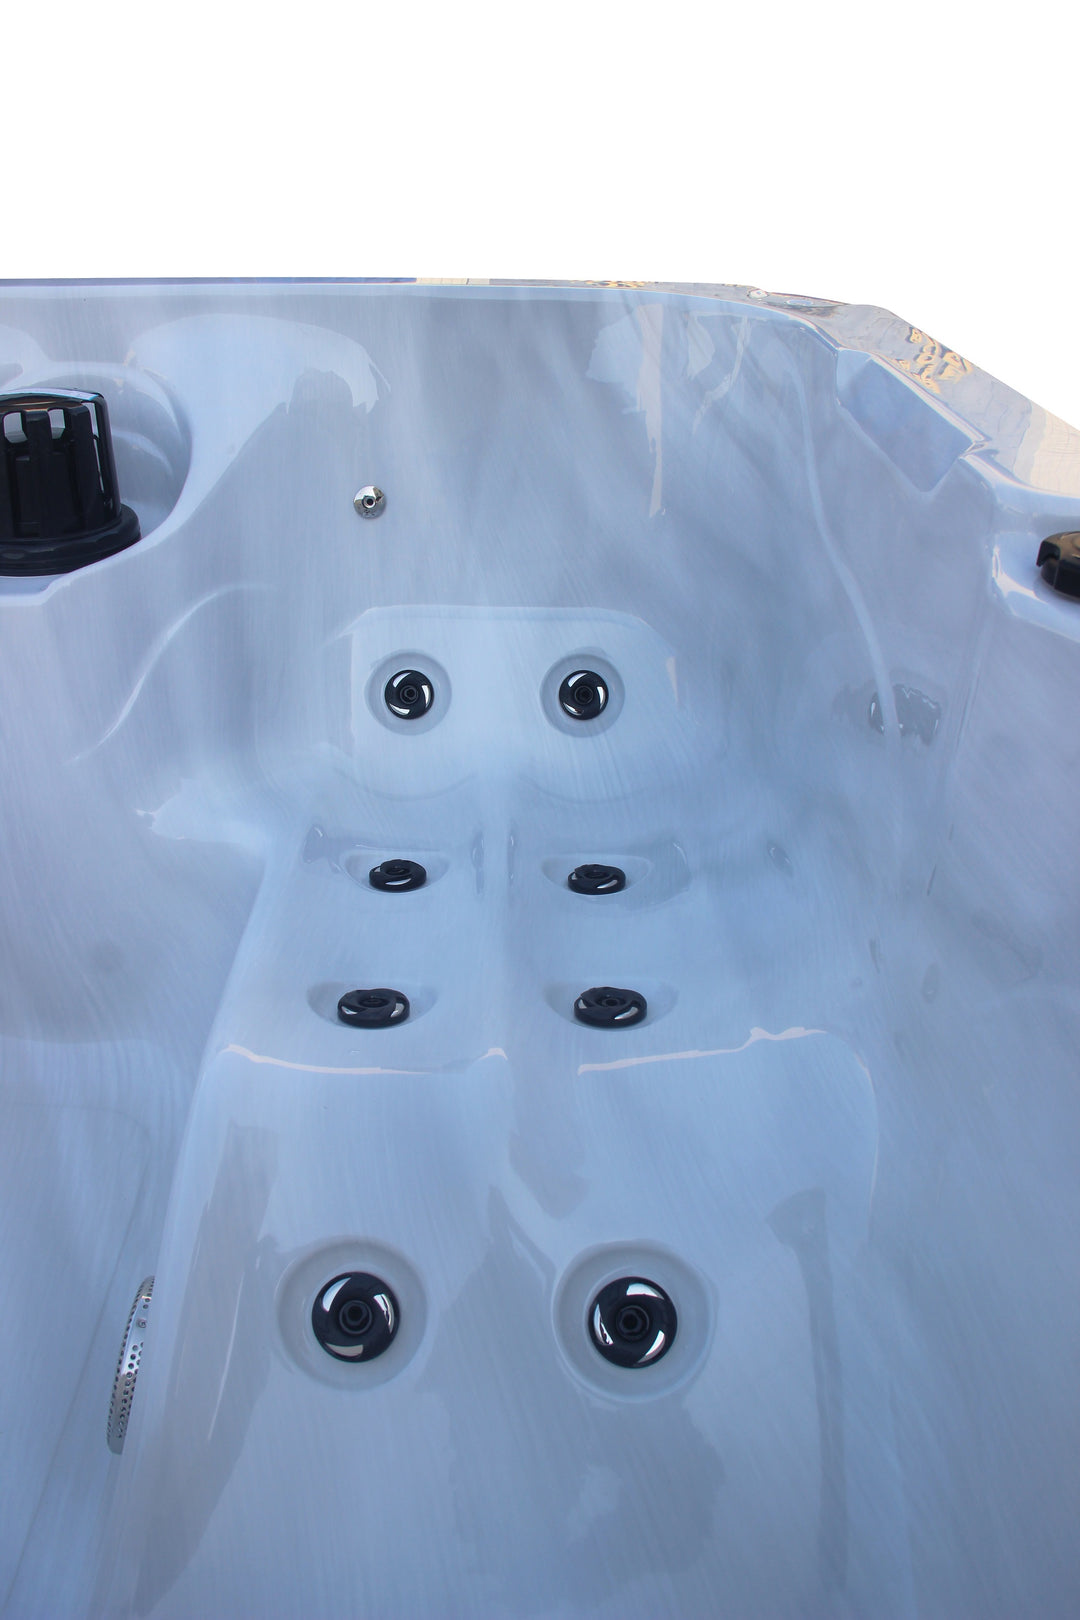 Outdoorwhirlpool PALMA Weiß inkl. Abdeckung und Stiege 190x190x86 cm